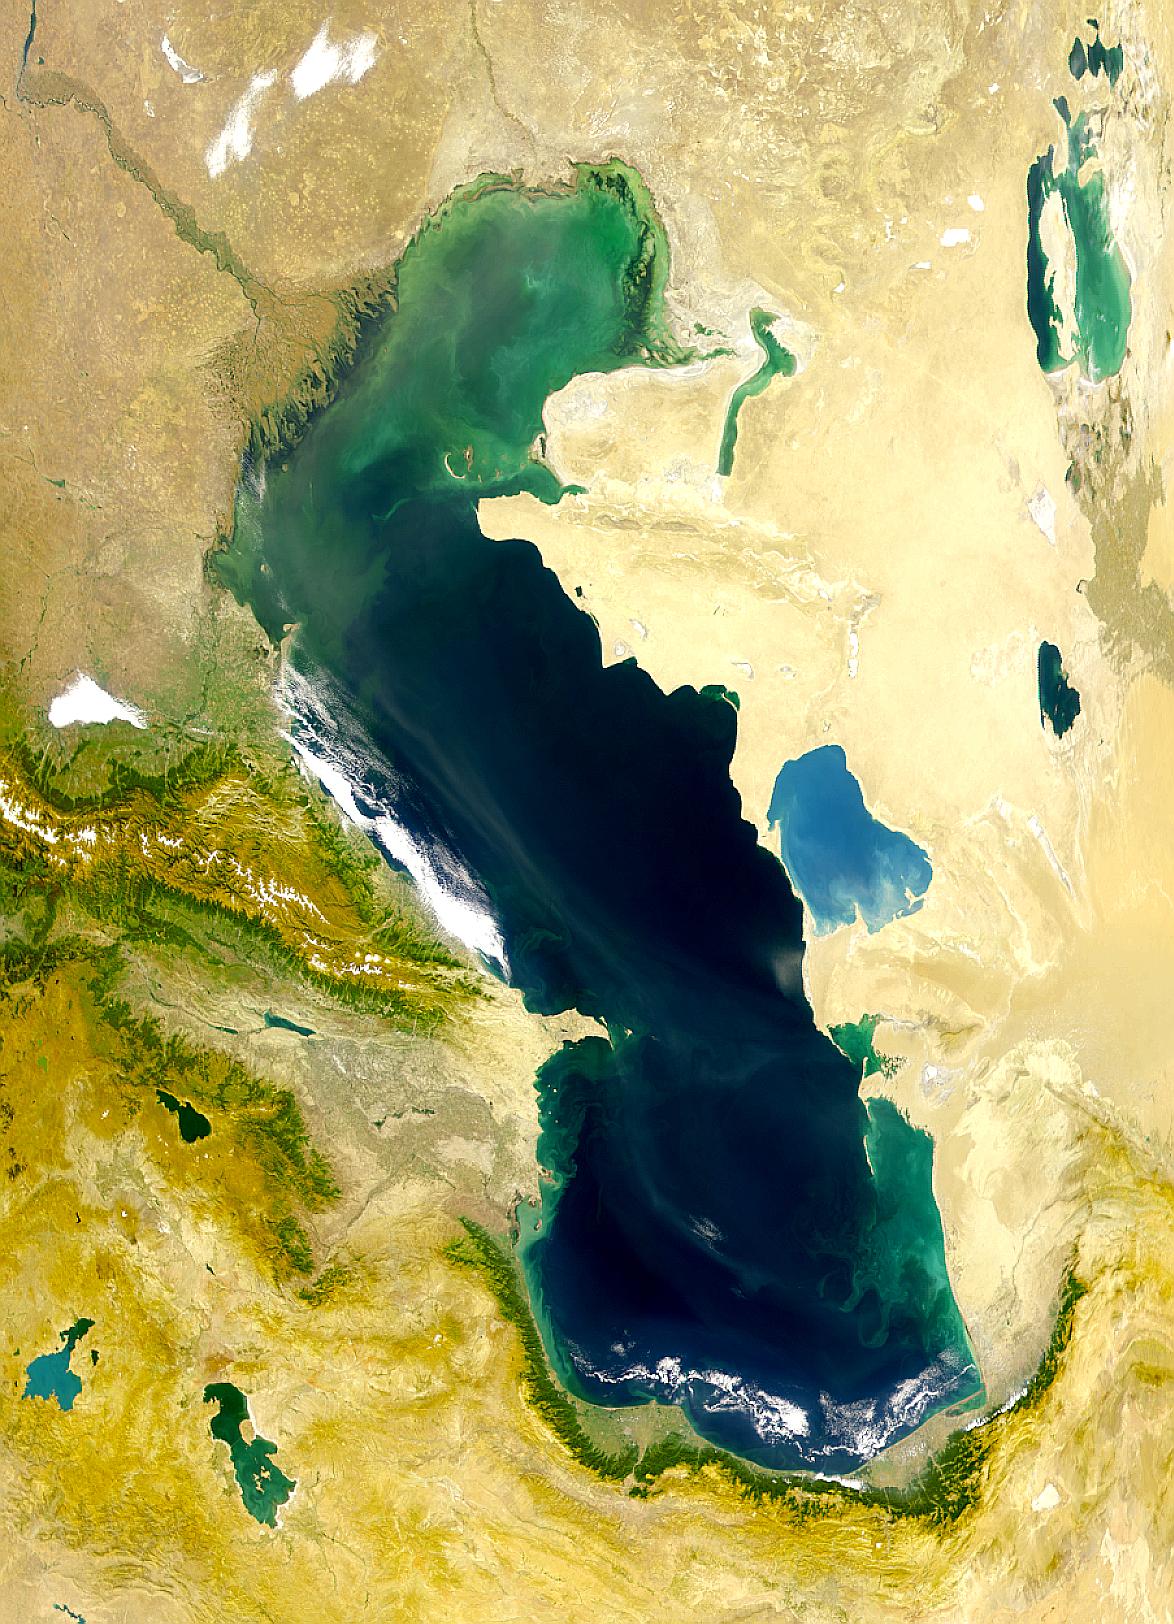 世界最大的湖泊——裏海